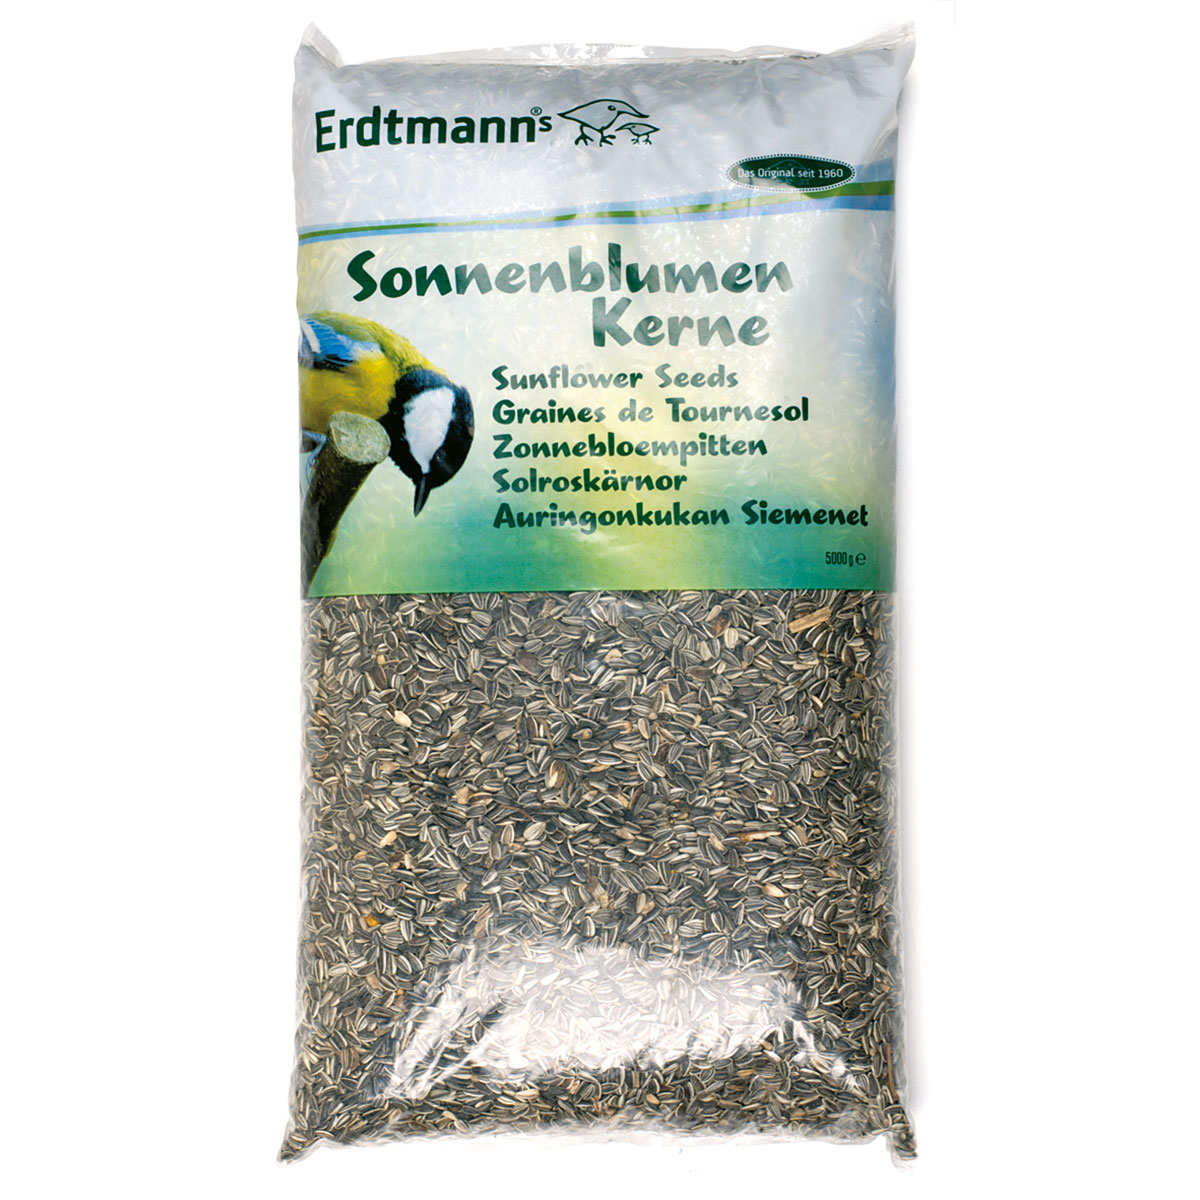 Erdtmann’s slunečnicová semena 5 kg